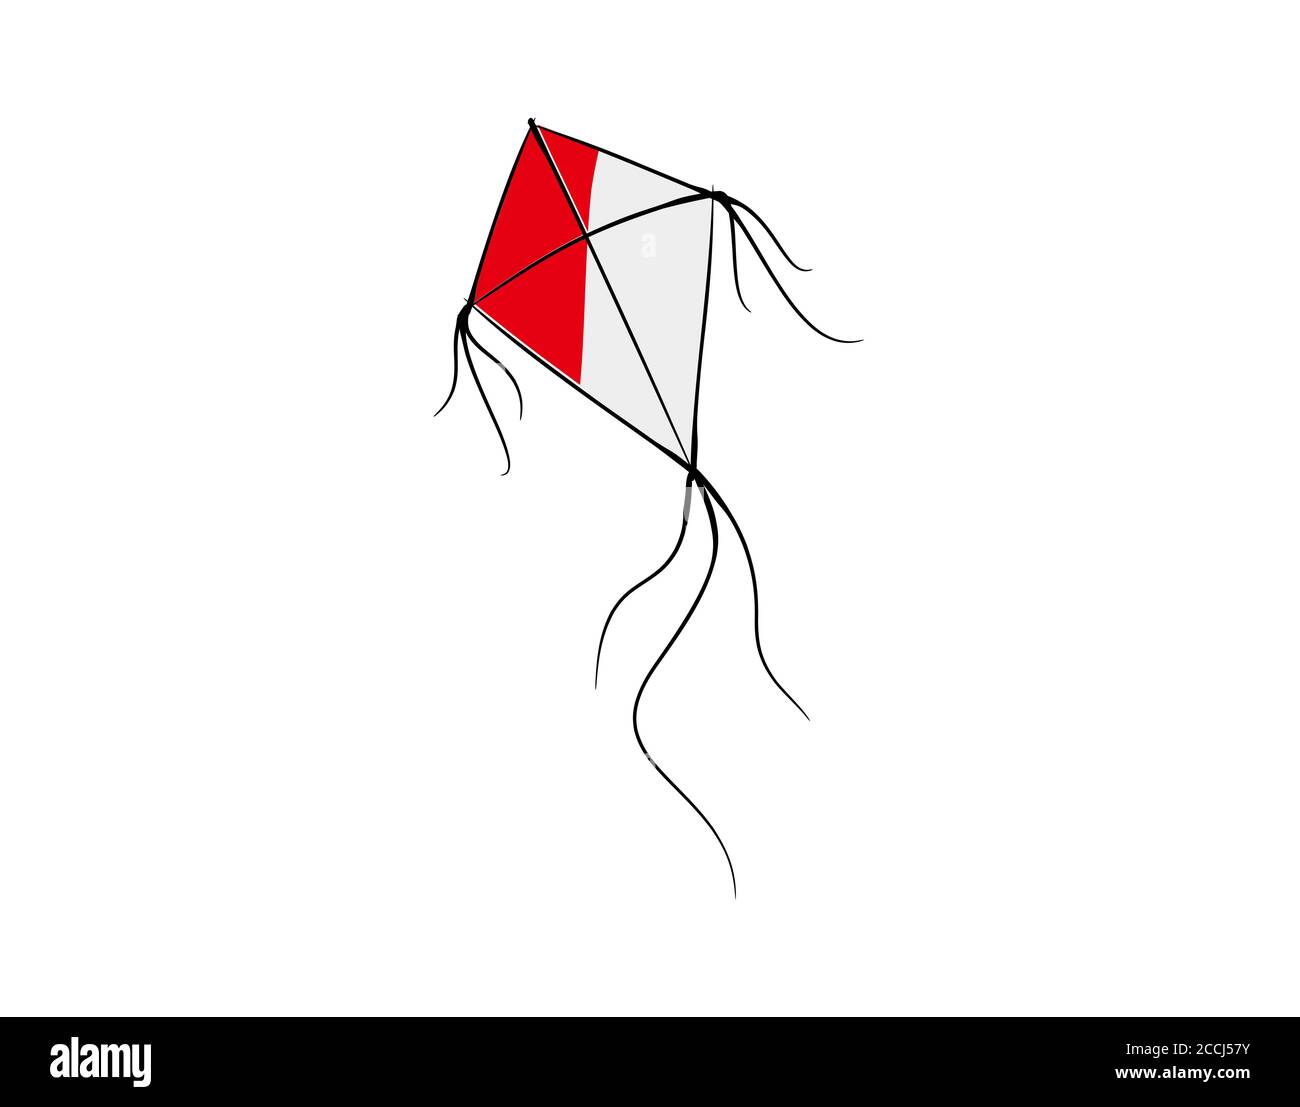 aquilone rosso e bianco su sfondo bianco nell'illustrazione vettoriale Illustrazione Vettoriale